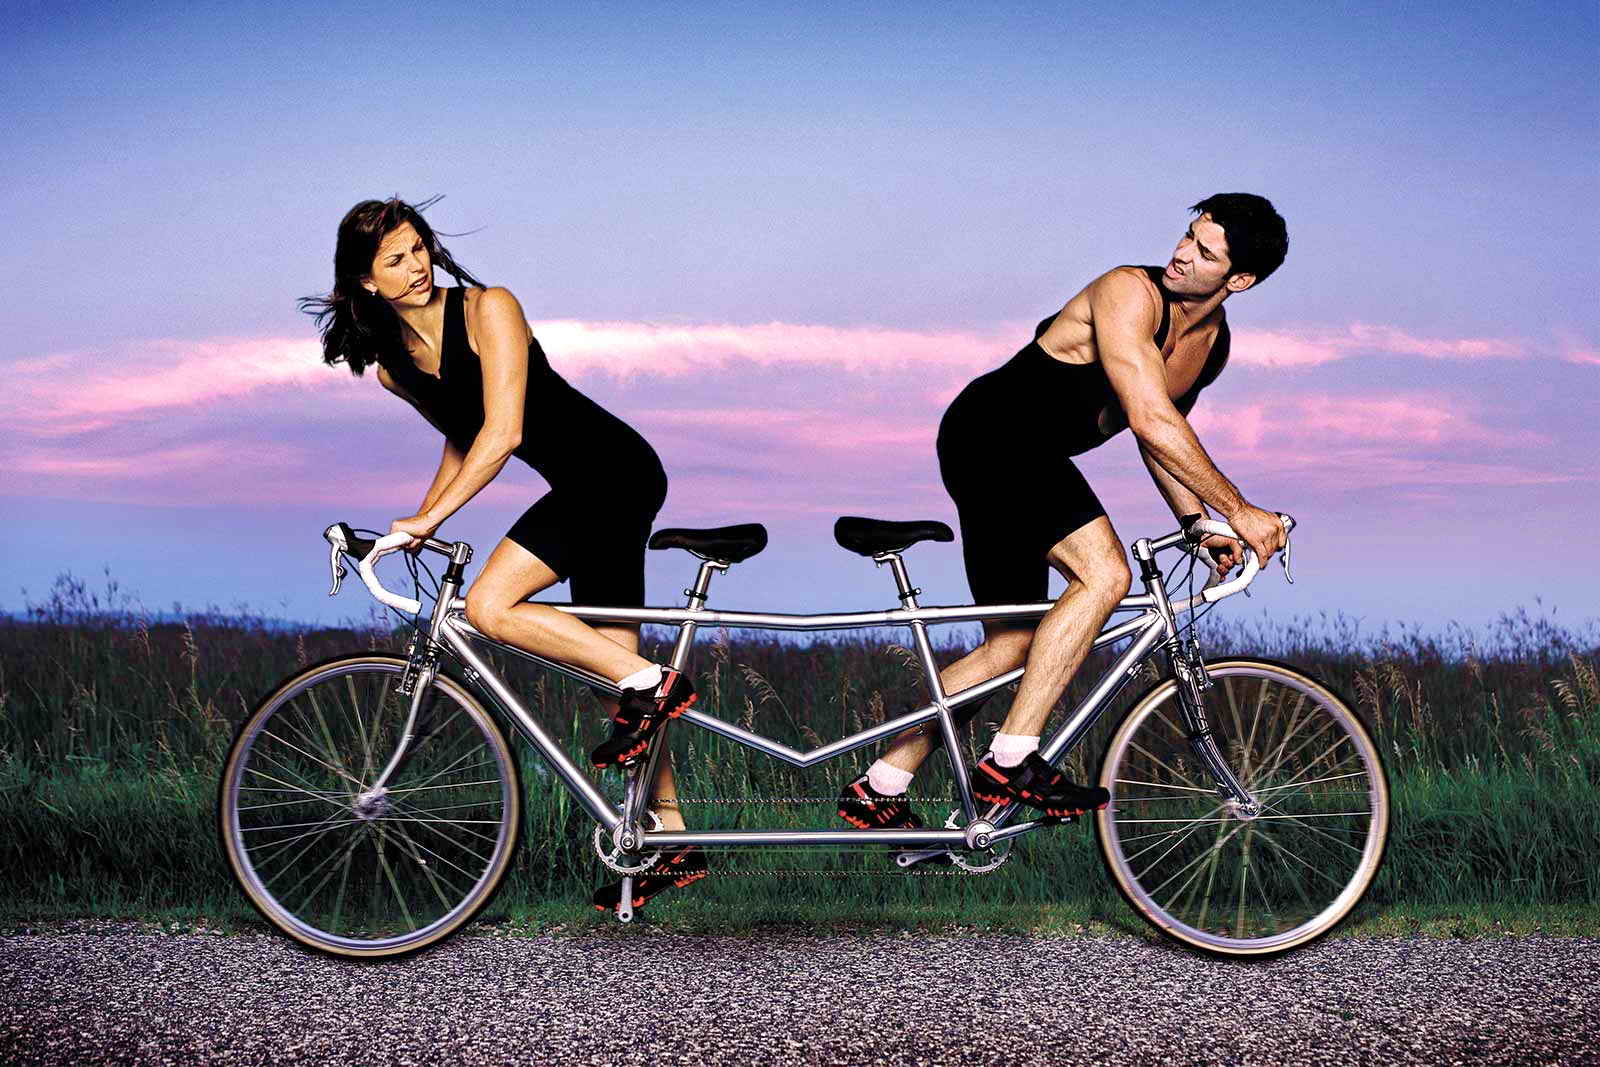 Зависимость в отношениях друг от друга. Мужчина иженшина на велосипеде. Парень с девушкой на велосипеде. Велосипед для двоих. Женщина на велосипеде.